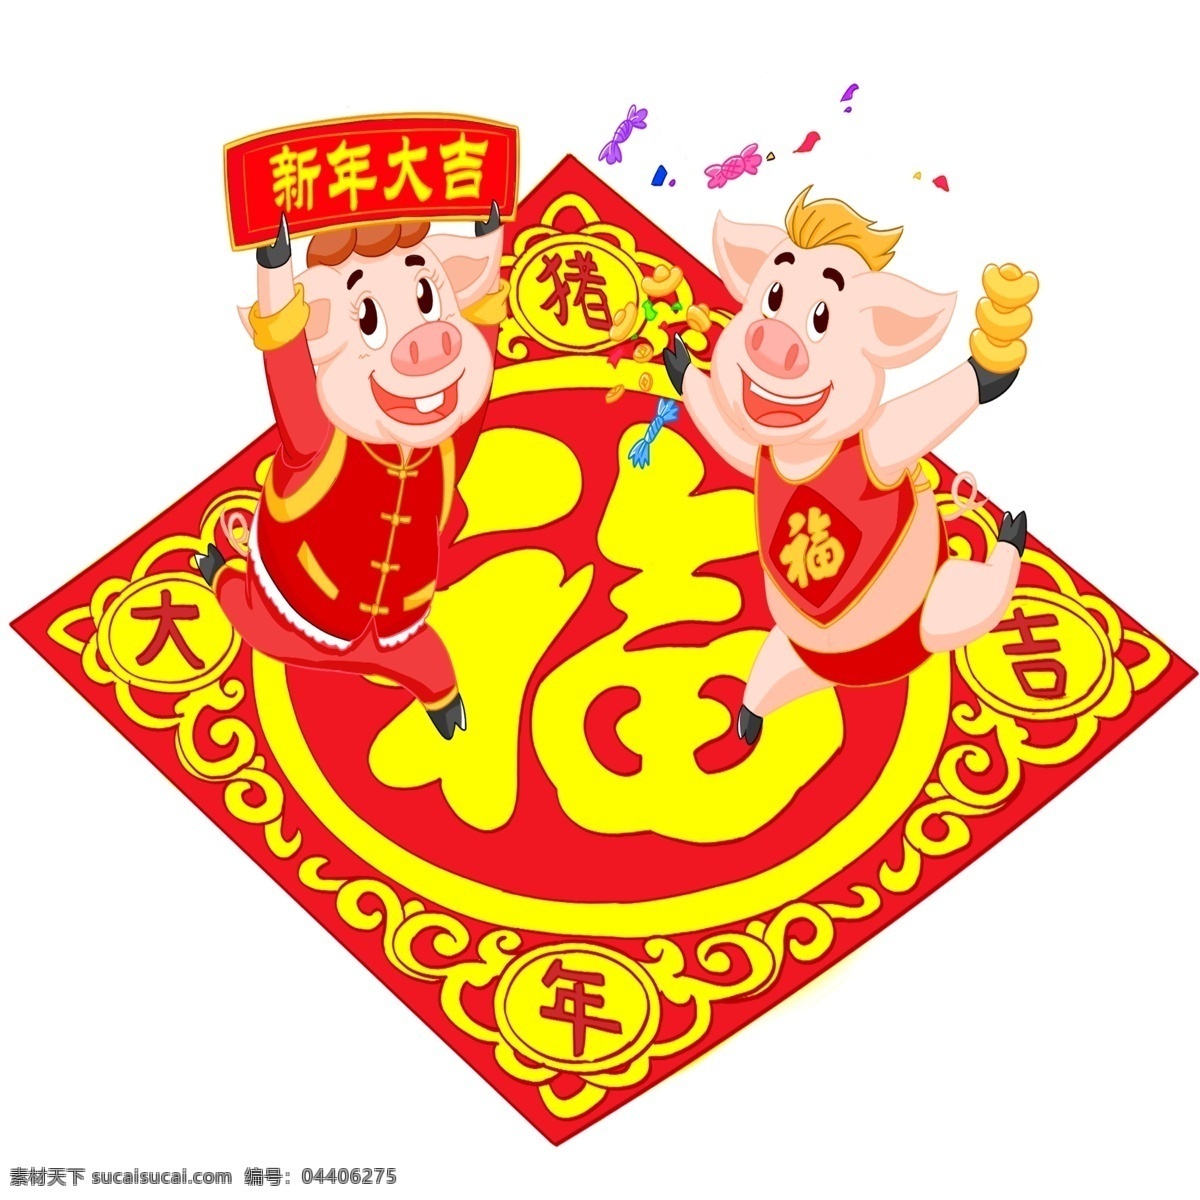 手绘 猪 新年 送 祝福 新年大吉 手绘卡通猪猪 福字贴 喜迎猪年 手舞足蹈 兴高采烈 送祝福 中国红